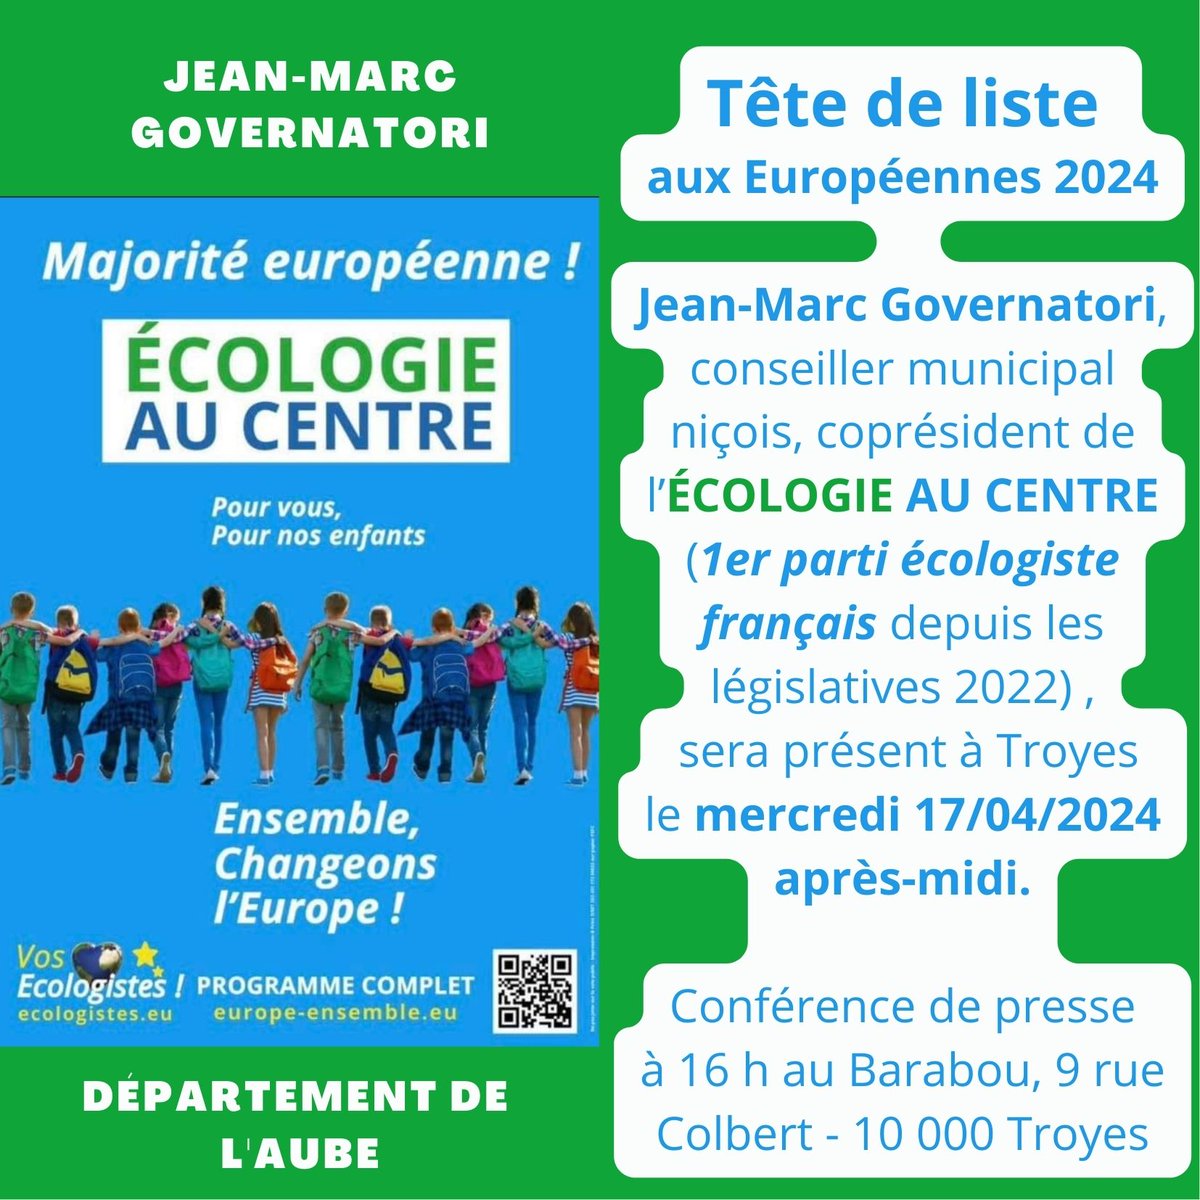 Notez la date du mercredi 17 avril 2024 pour cette belle rencontre prévue à Troyes avec Jean-Marc Governatori.
#européennes2024 #aube
#SainteSavine #ecologieaucentre 
#ensemblechangeonsleurope
#governatori #nellycollottouze